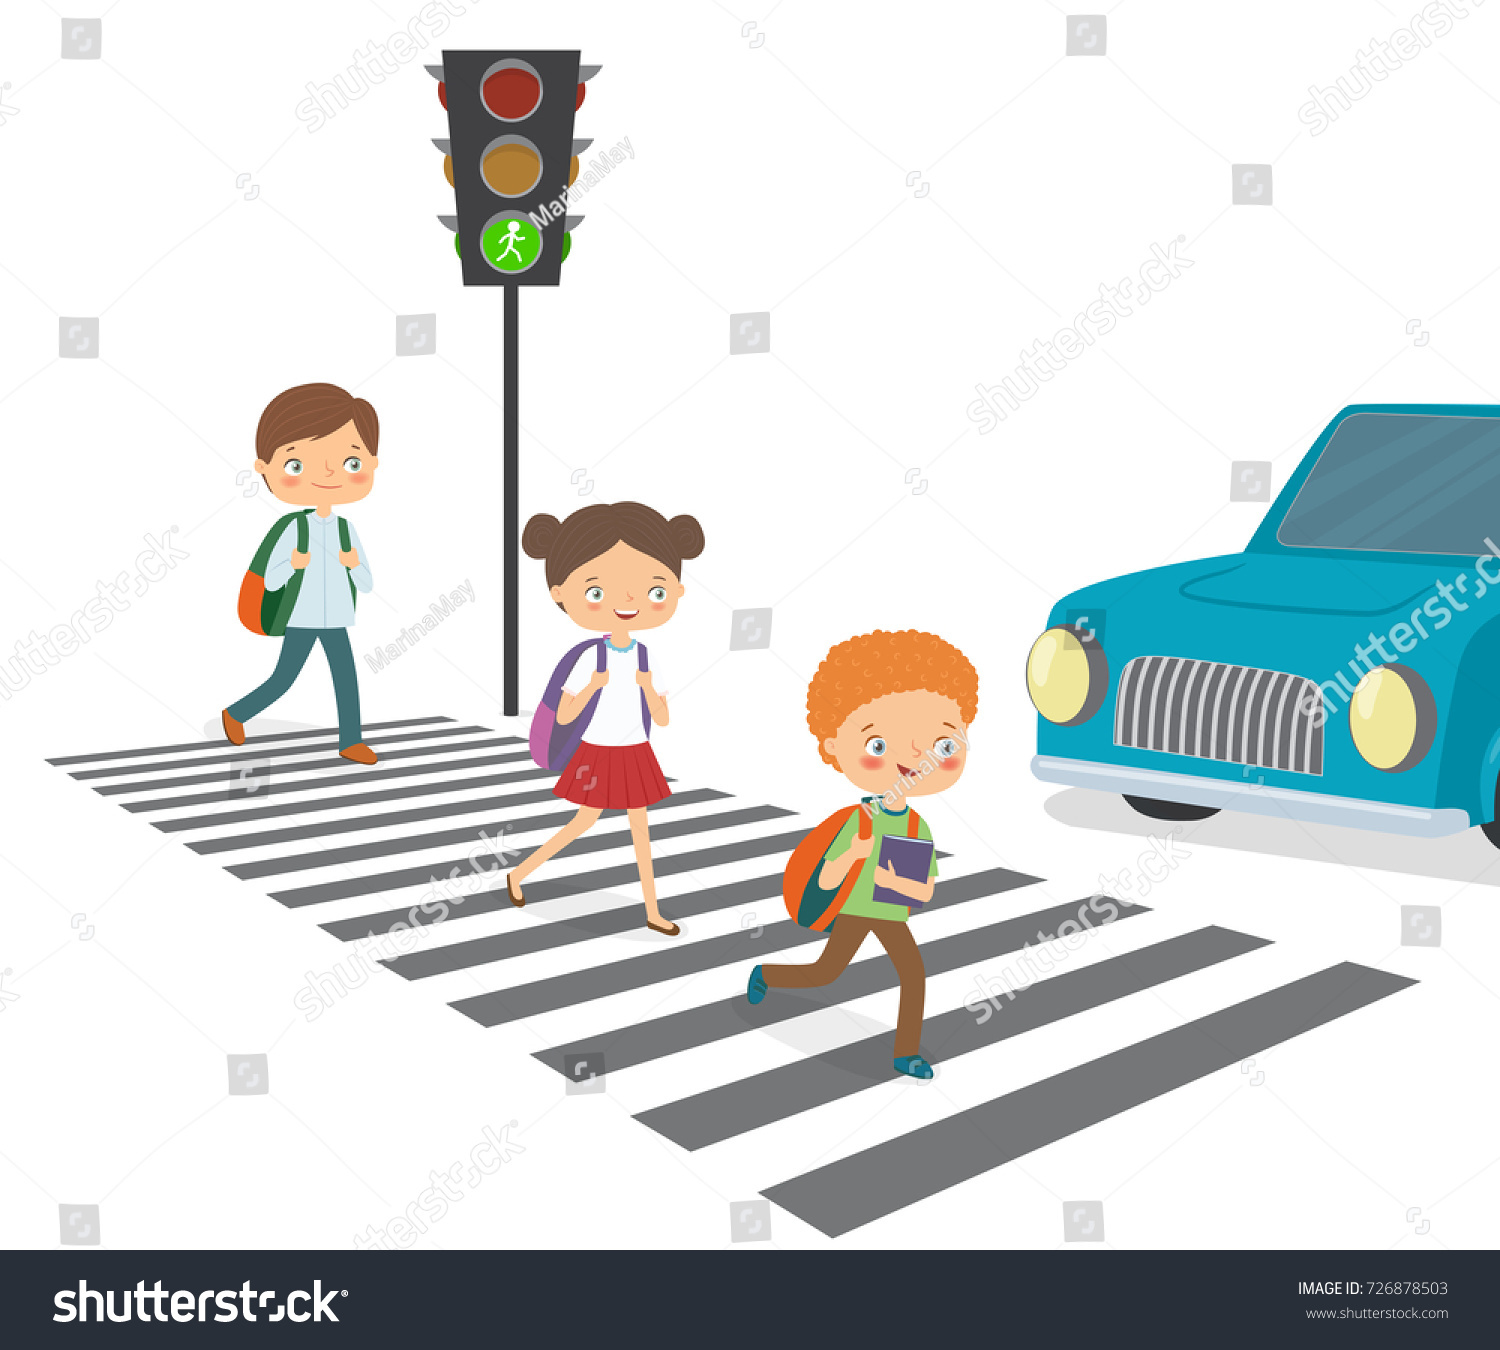 Les Enfants Traversent La Route Jusqu Au Image Vectorielle De Stock Libre De Droits 726878503